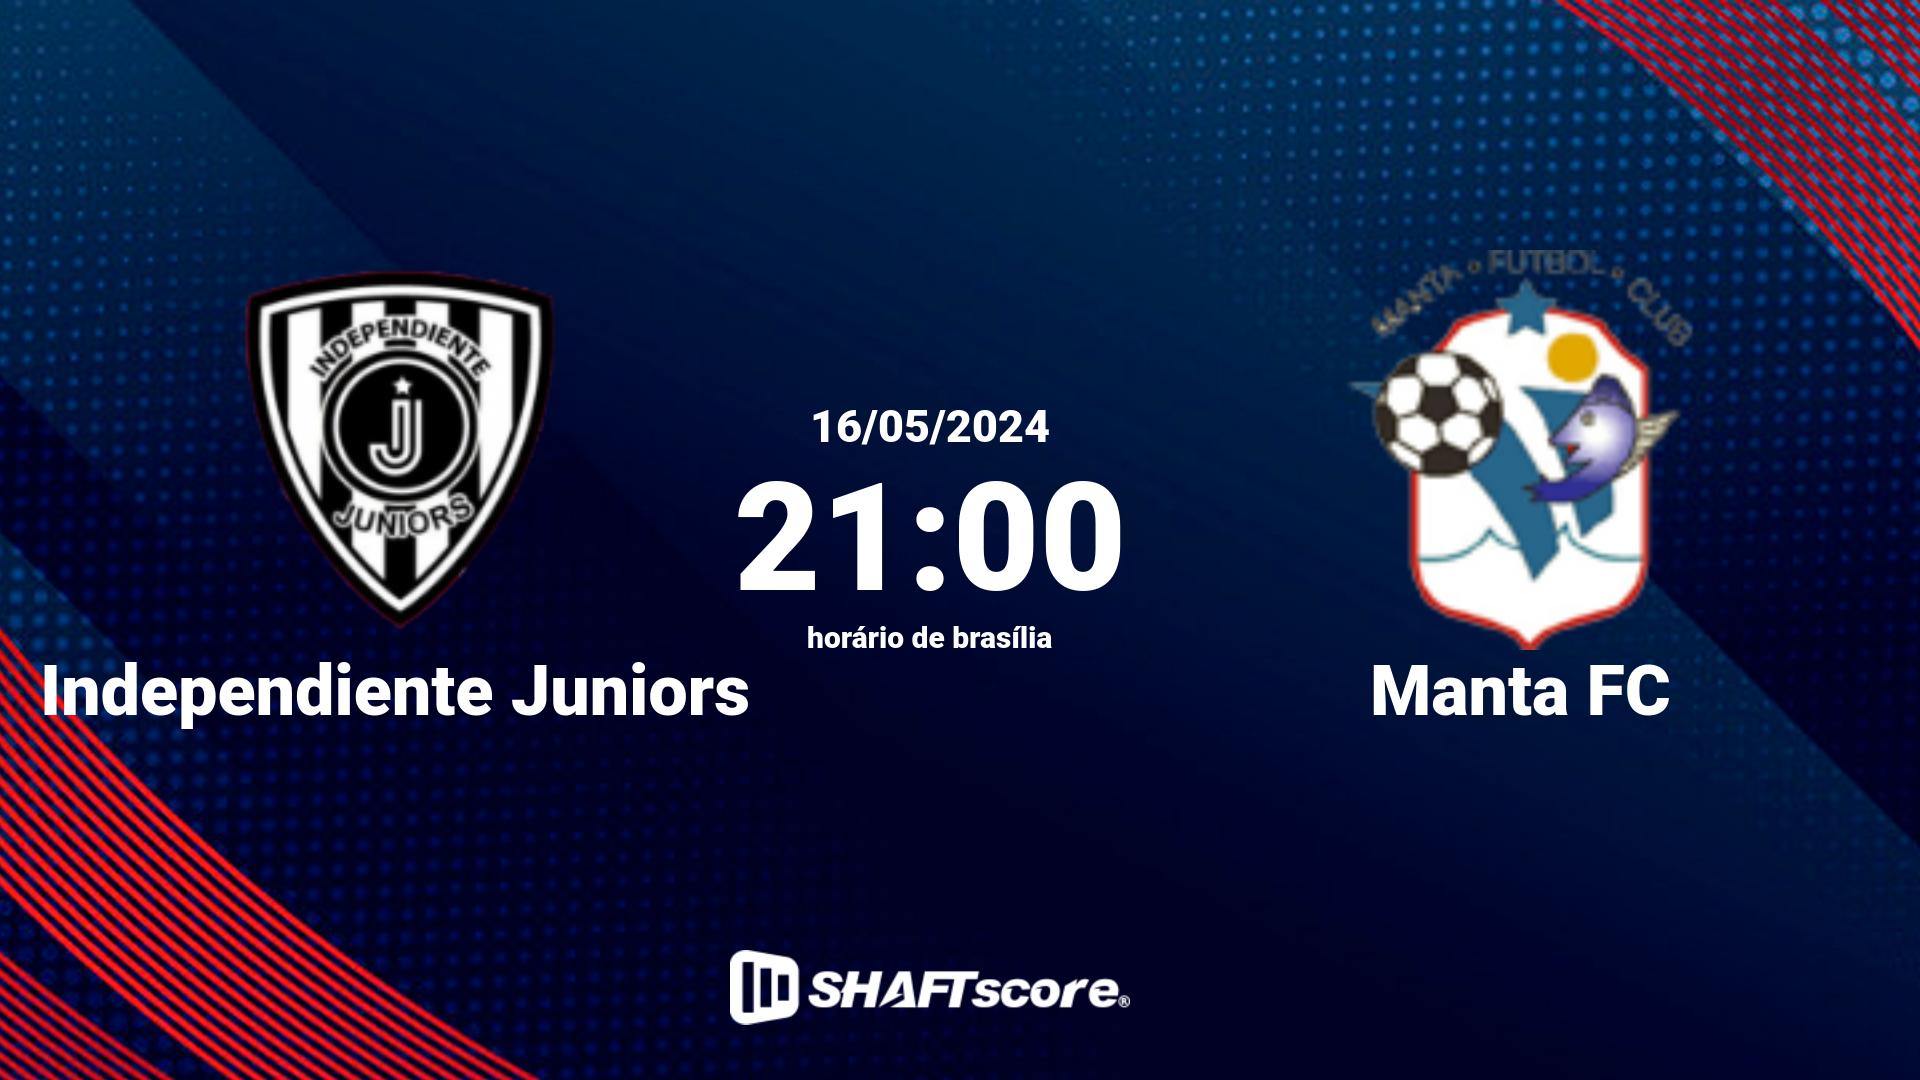 Estatísticas do jogo Independiente Juniors vs Manta FC 16.05 21:00